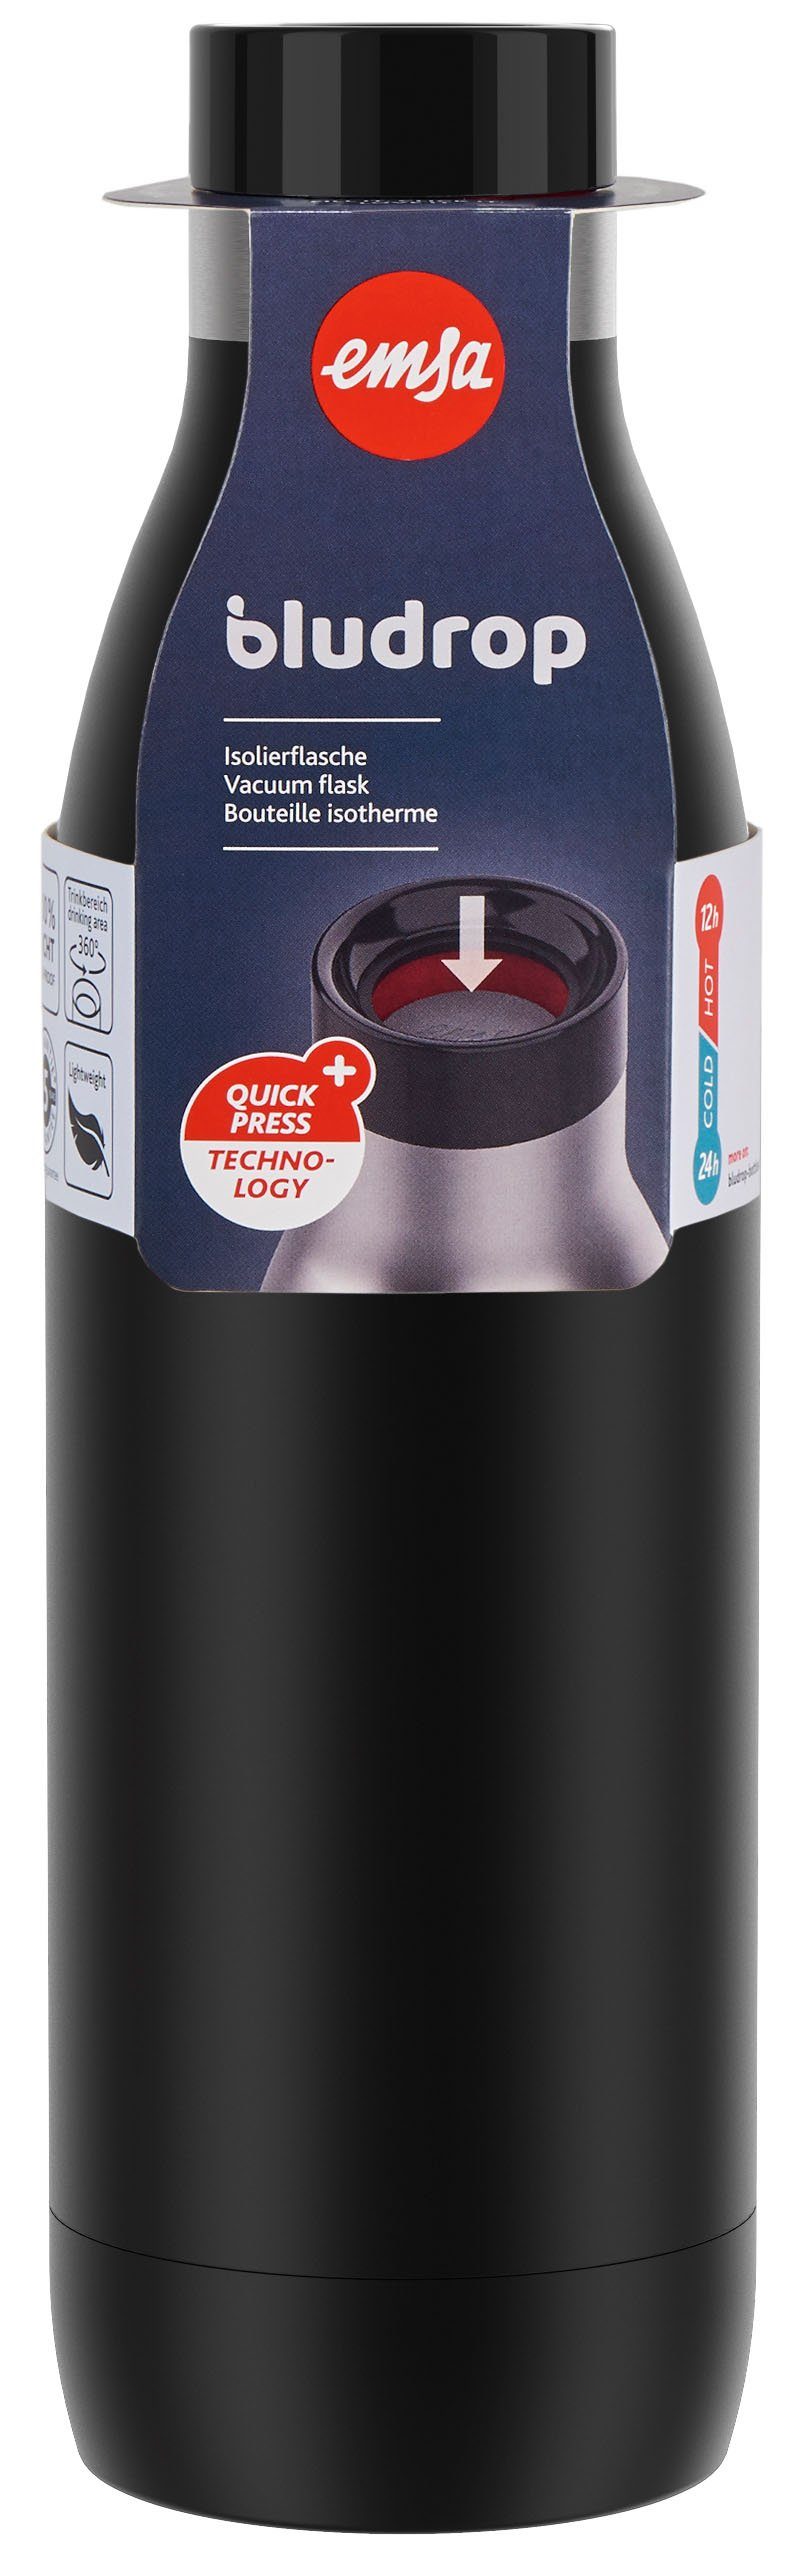 Emsa Trinkflasche Bludrop Color, Edelstahl, 12h Deckel, Quick-Press schwarz warm/24h spülmaschinenfest kühl